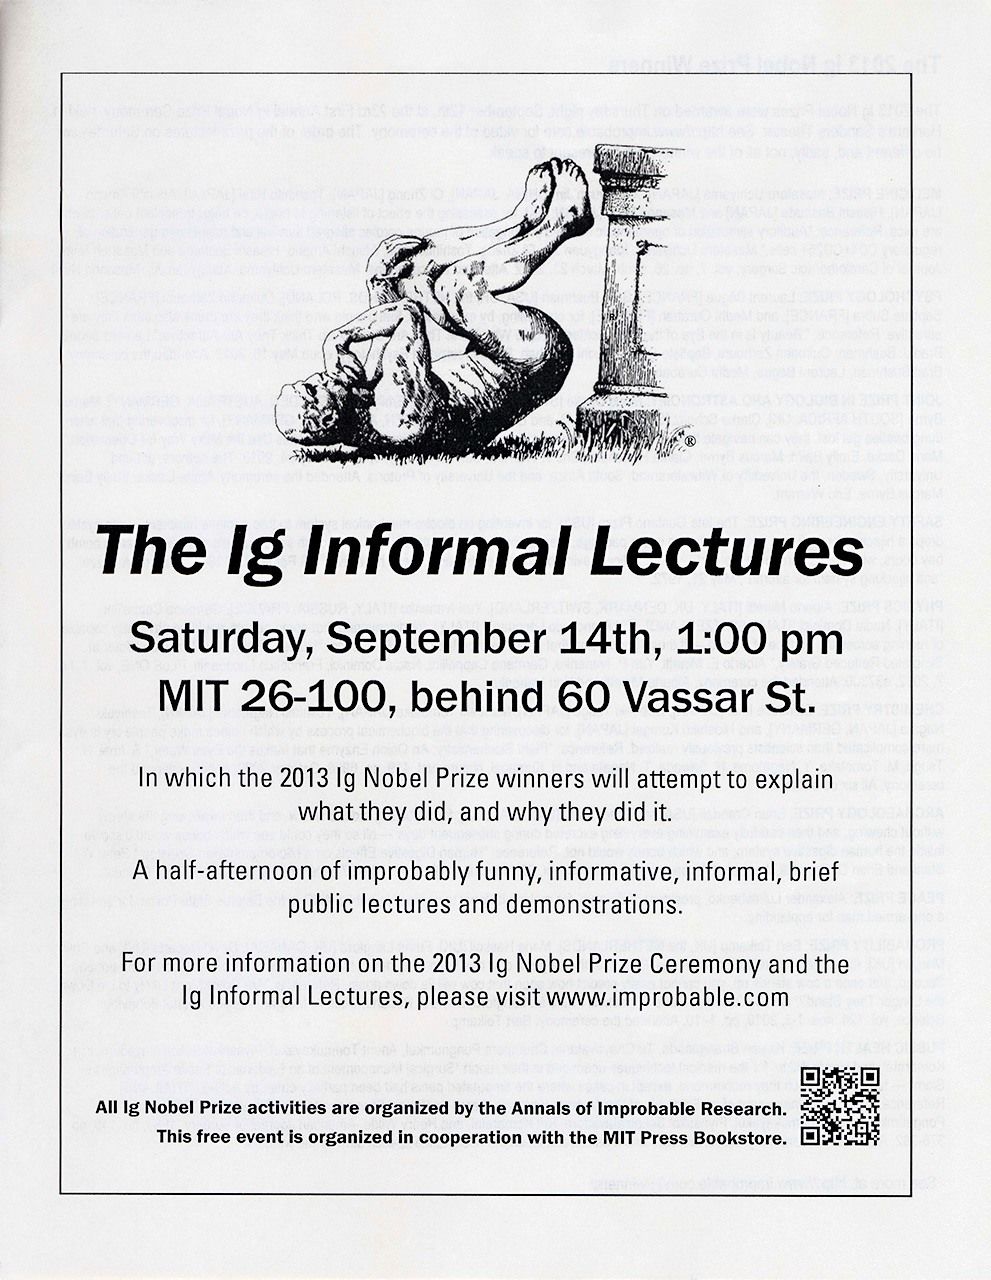 Dépliant annonçant les conférences des Ig Nobel au Massachusetts Institute of Technology (MIT), le lendemain de la cérémonie.